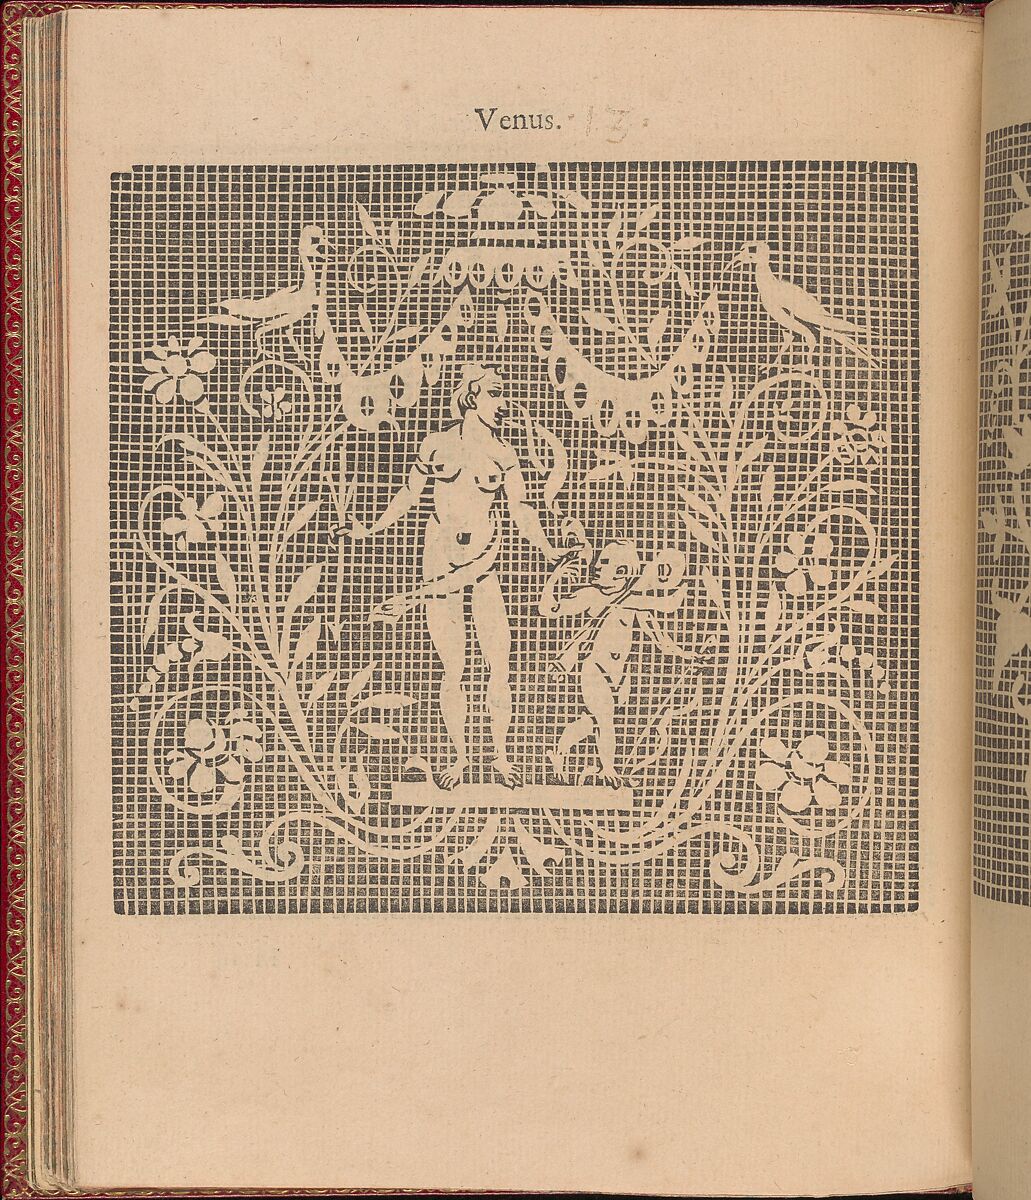 Les Singuliers et Nouveaux Portraicts... page 47 (verso), Federico de Vinciolo (Italian, active Paris, ca. 1587–99), Woodcut 